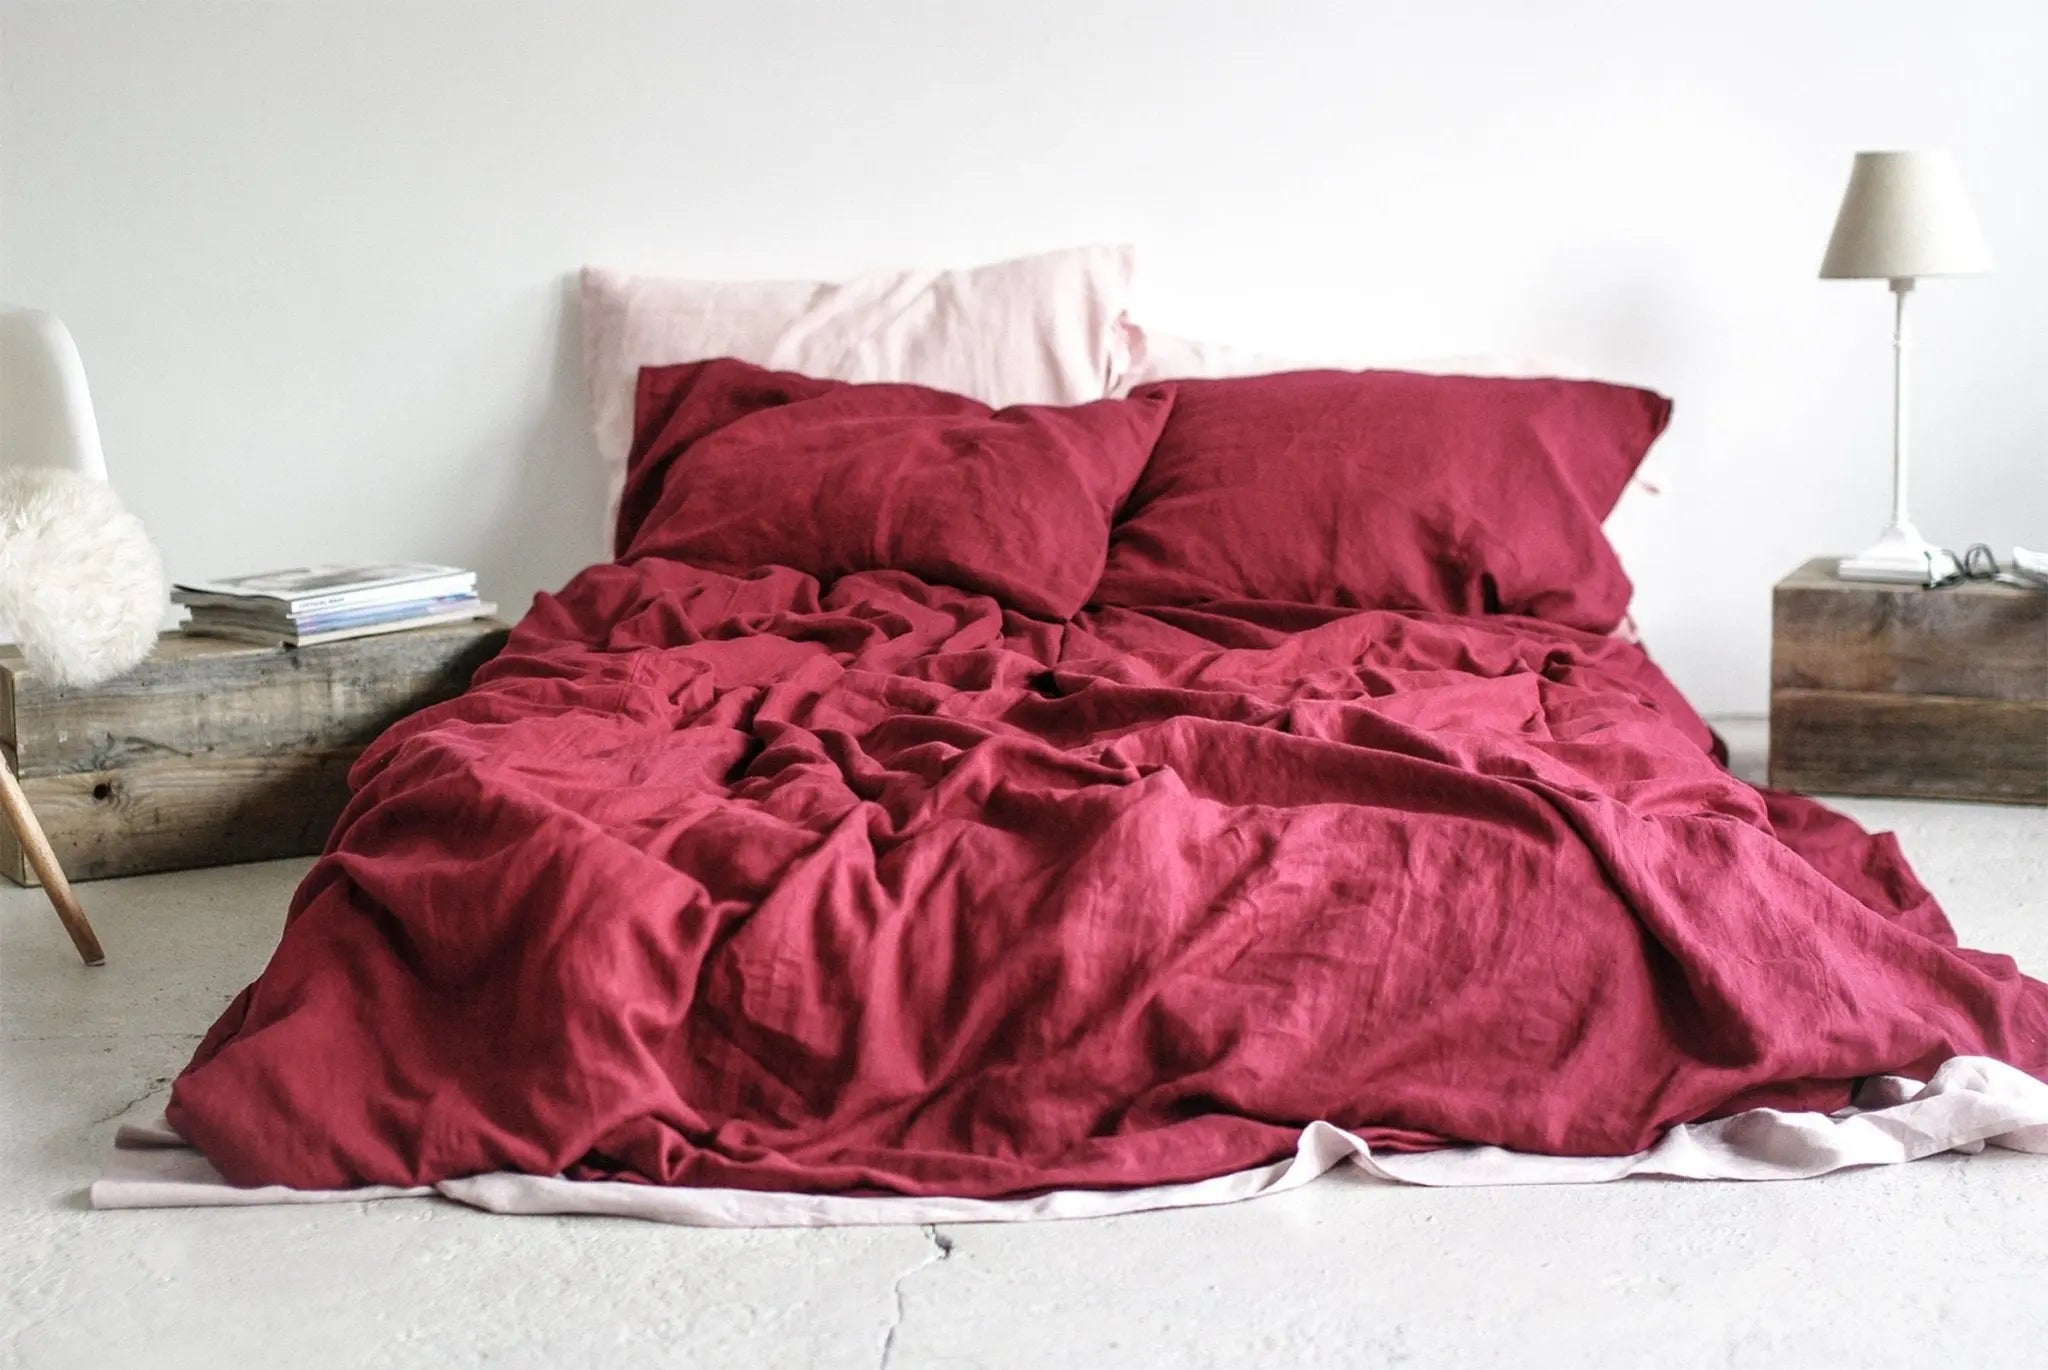 Soft Linen Duvet Cover Dark Cherry Red - Epic Linen luxury linen